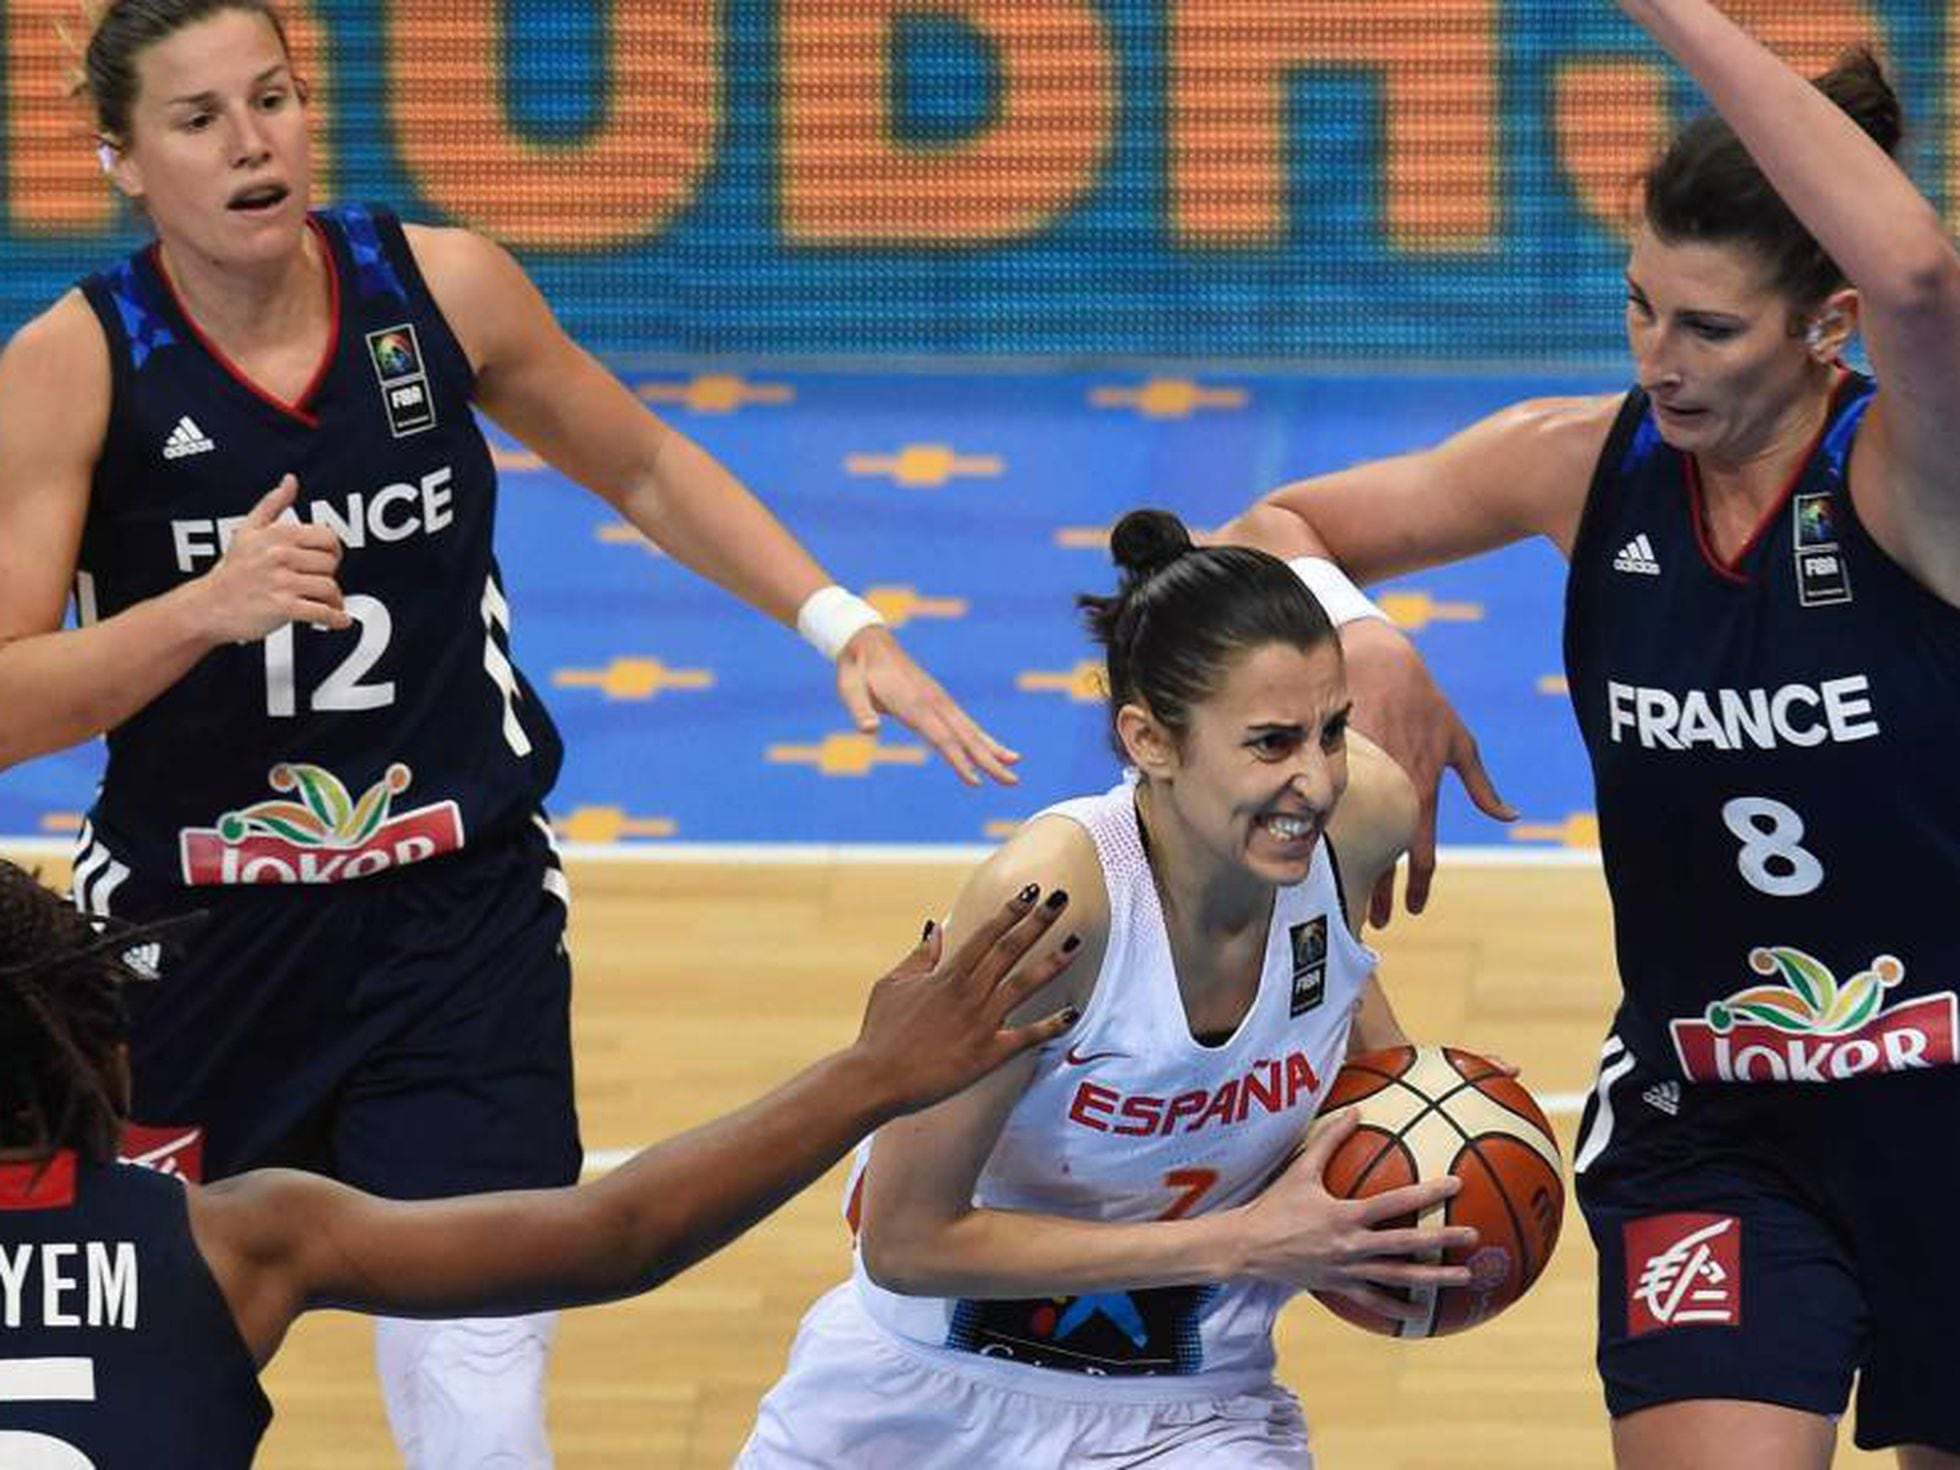 Fusión Decorar obesidad Eurobasket femenino: Laia Palau: “Somos un espectáculo de equipo” |  Deportes | EL PAÍS